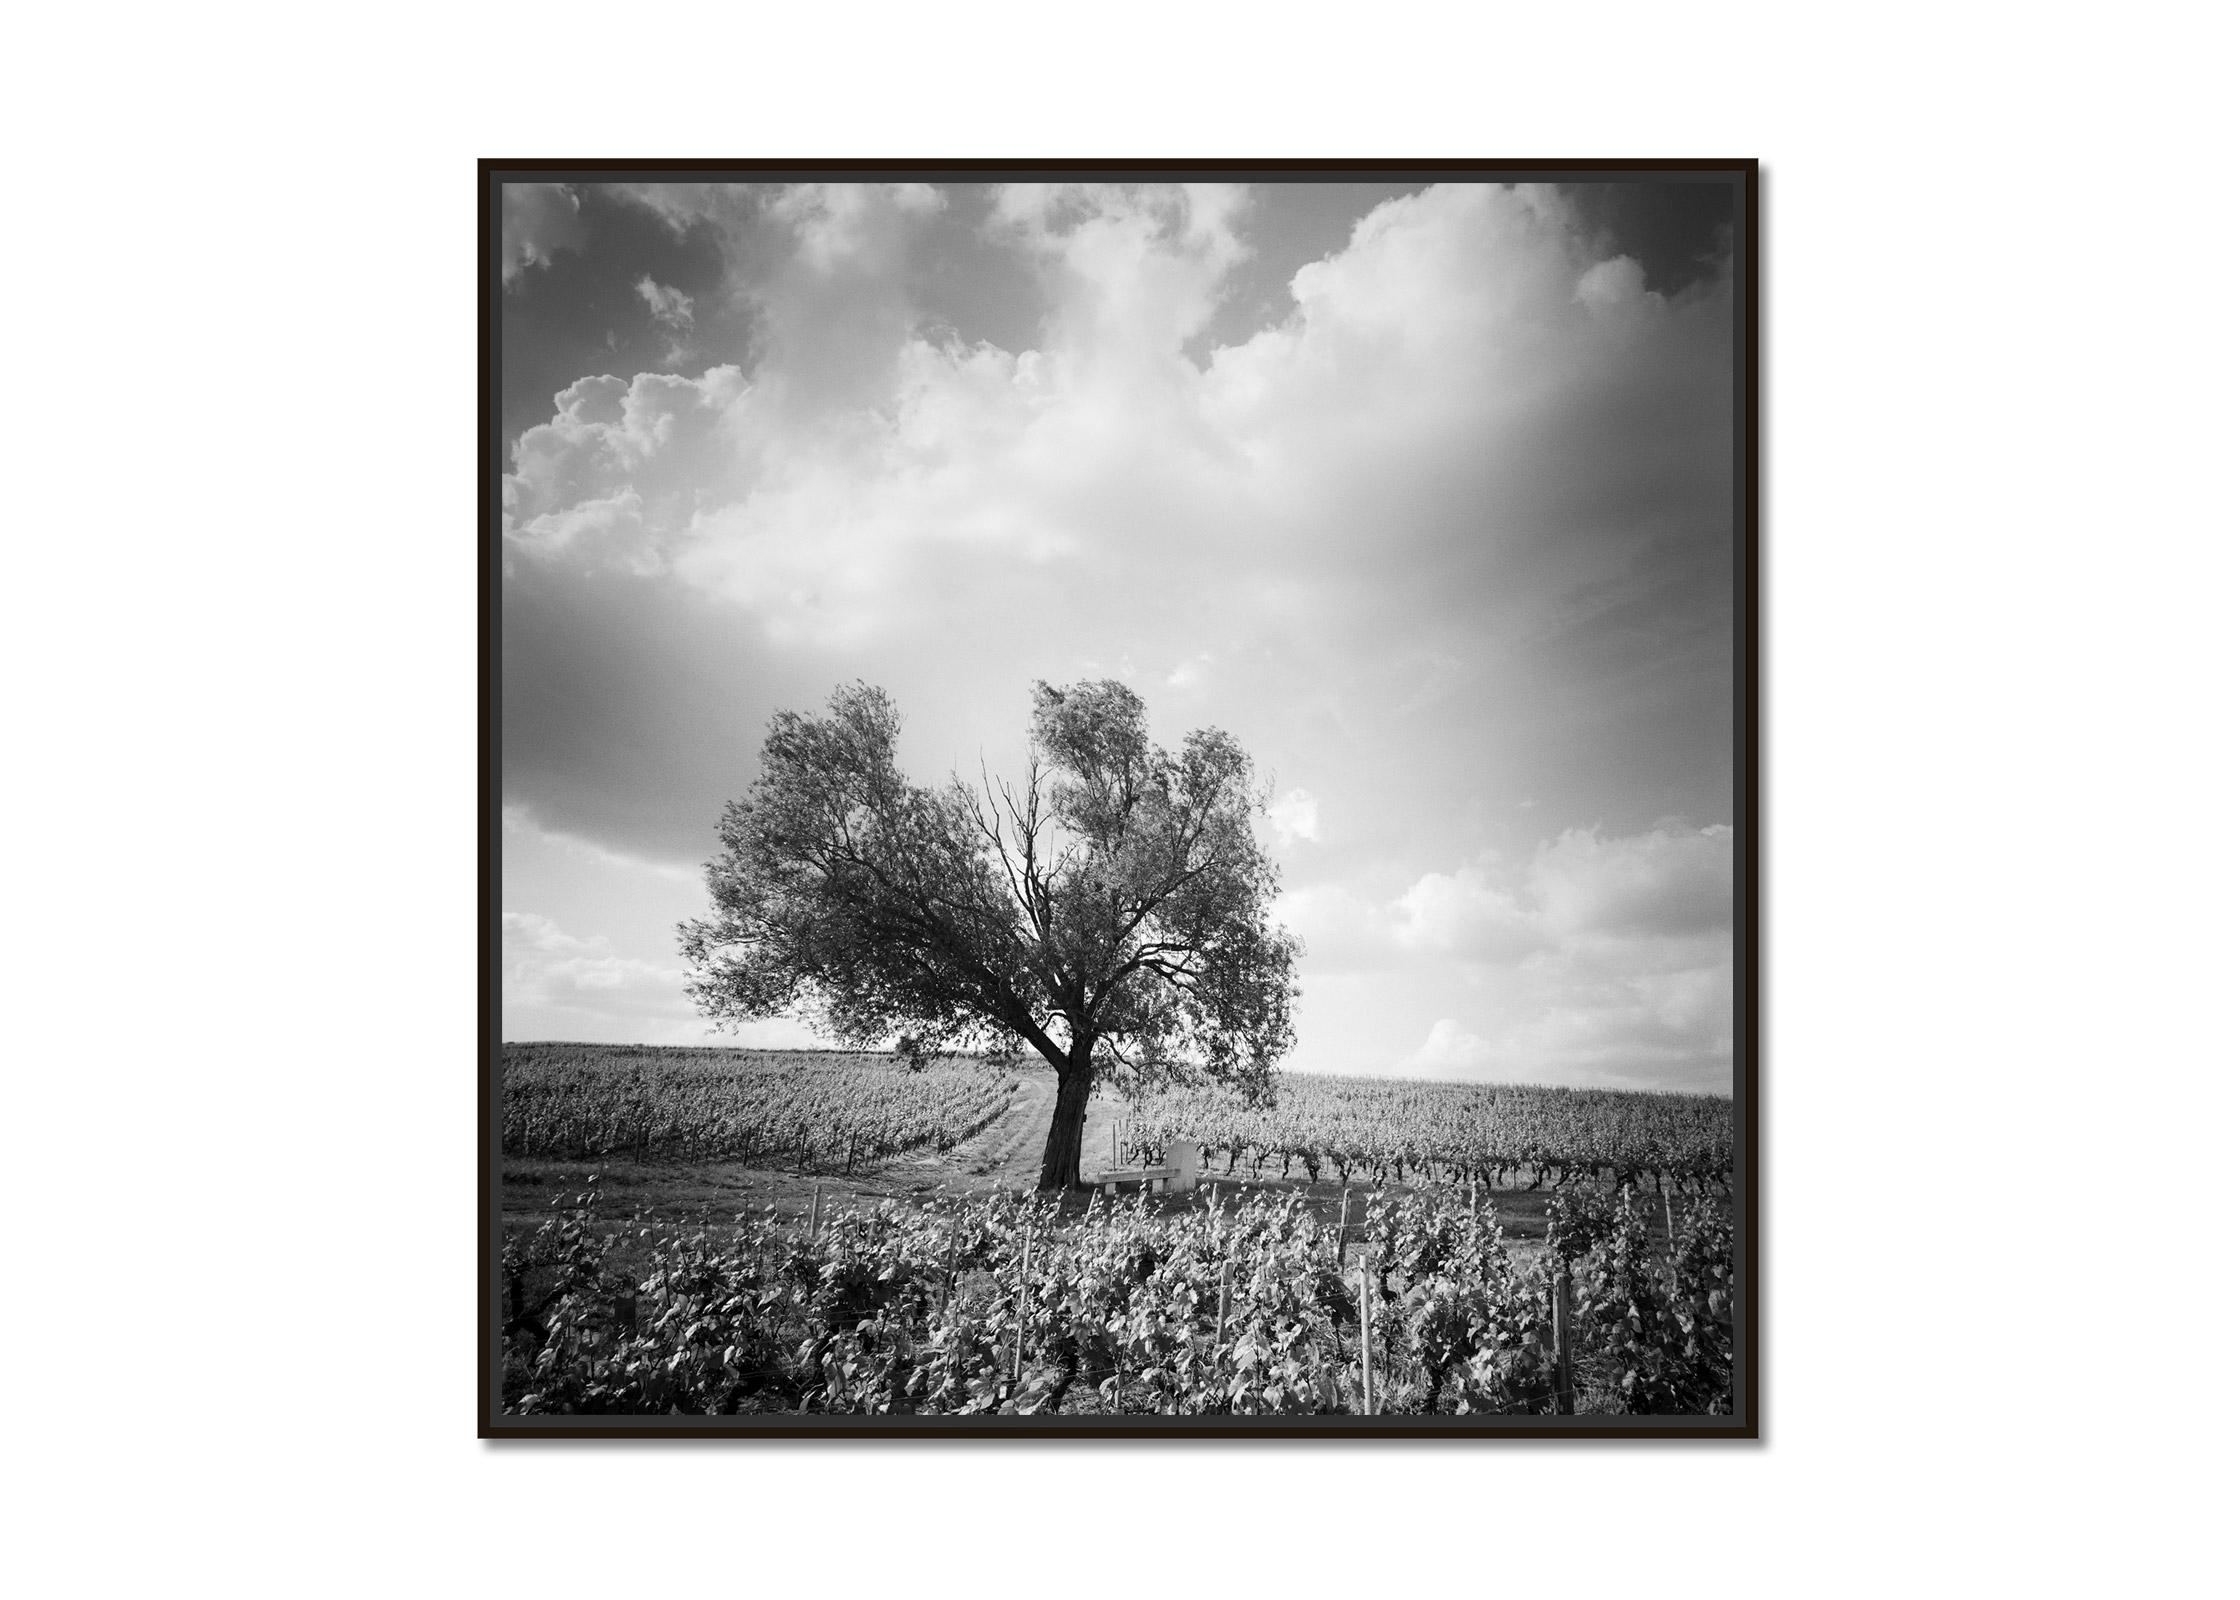 Old Tree at Vineyard, Bordeaux, Frankreich, minimalistischer Schwarz-Weiß-Landschaftsdruck – Photograph von Gerald Berghammer